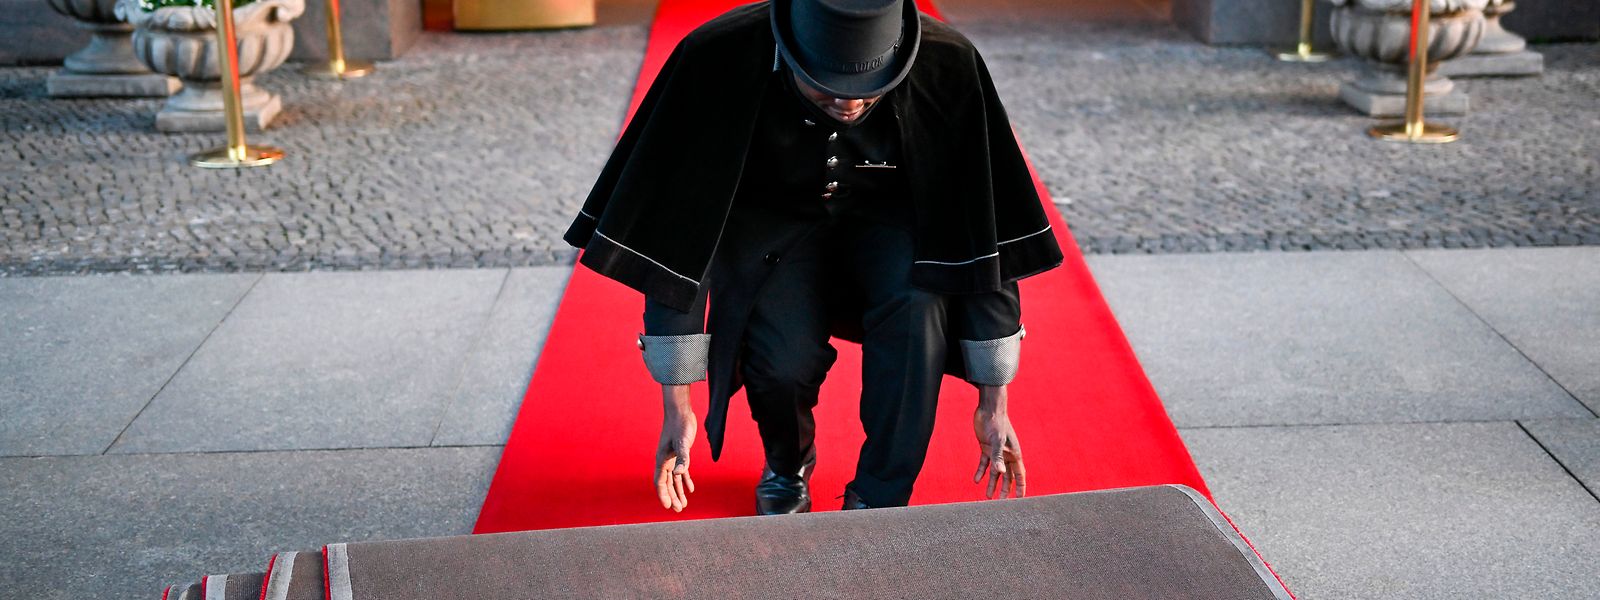 Doorman Timothy Uhunamure rollt vor dem Hotel Adlon den roten Teppich aus. Insidern zufolge wird König Charles III. wohl dort unterkommen, wo bereits seine Mutter Queen Elizabeth II. zu Gast war.